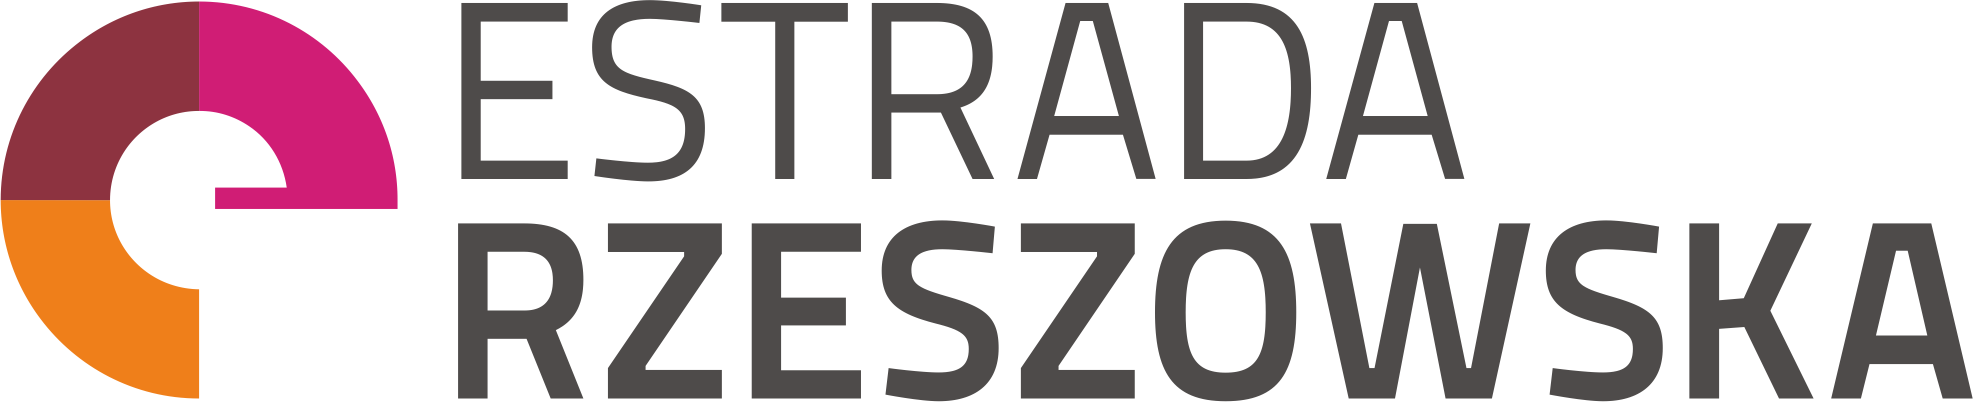 Logotyp - Estrada Rzeszowska